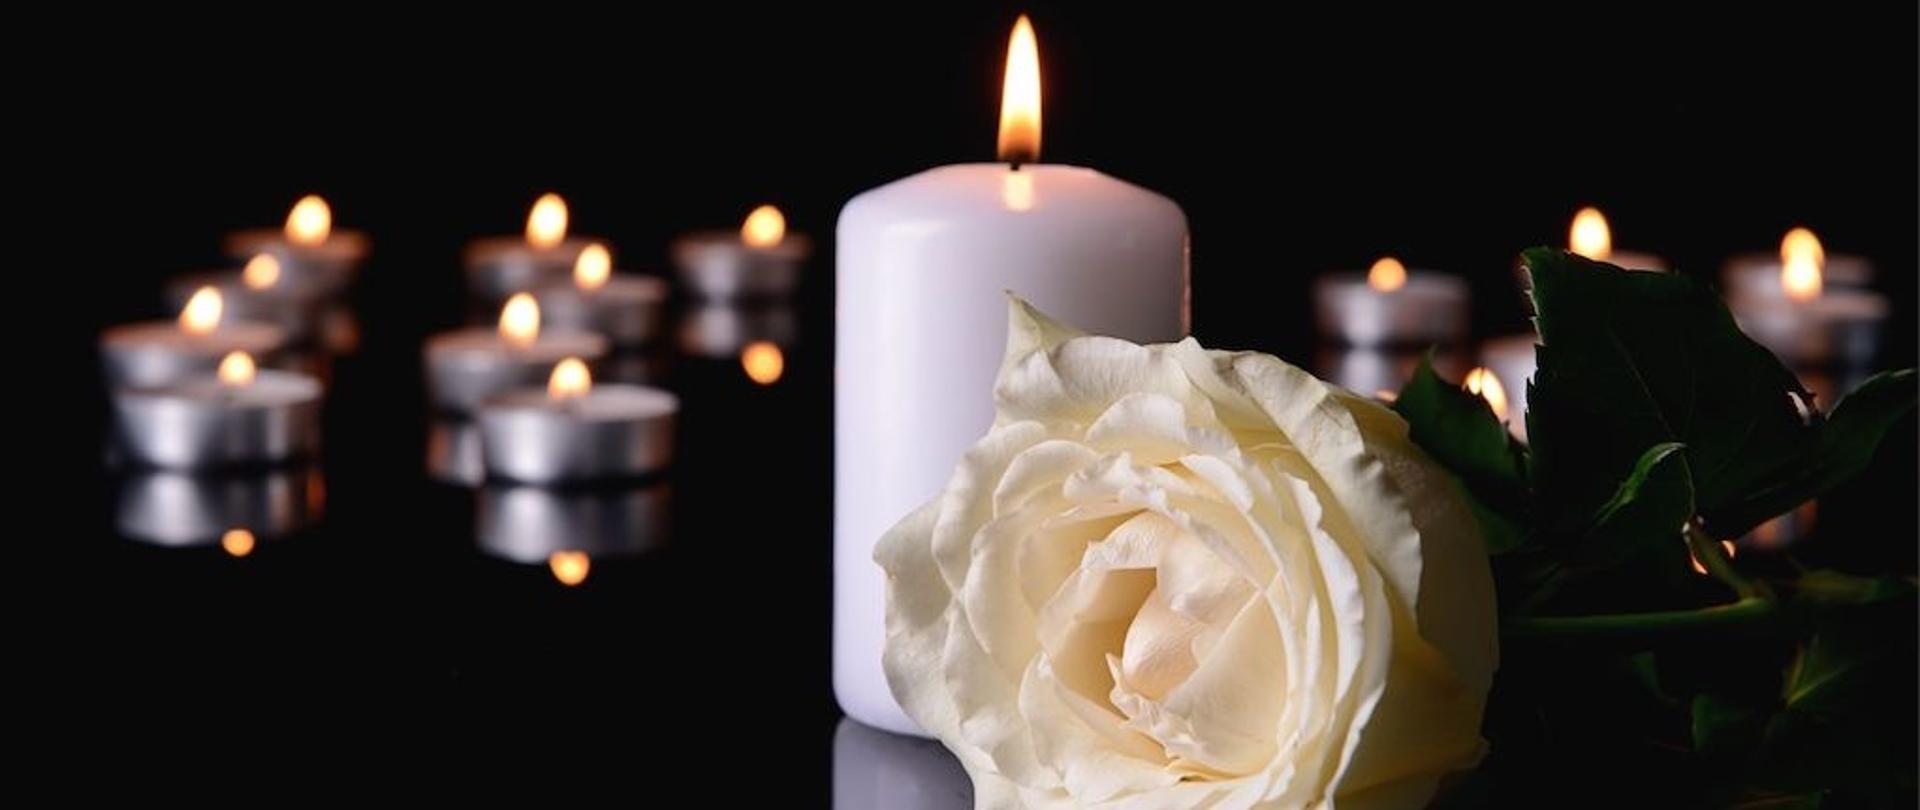 Biała zapalona świeca z białą różą na pierwszym planie, w tle zapalone małe świeczki w oddali. Całość w żałobnym charakterze.
